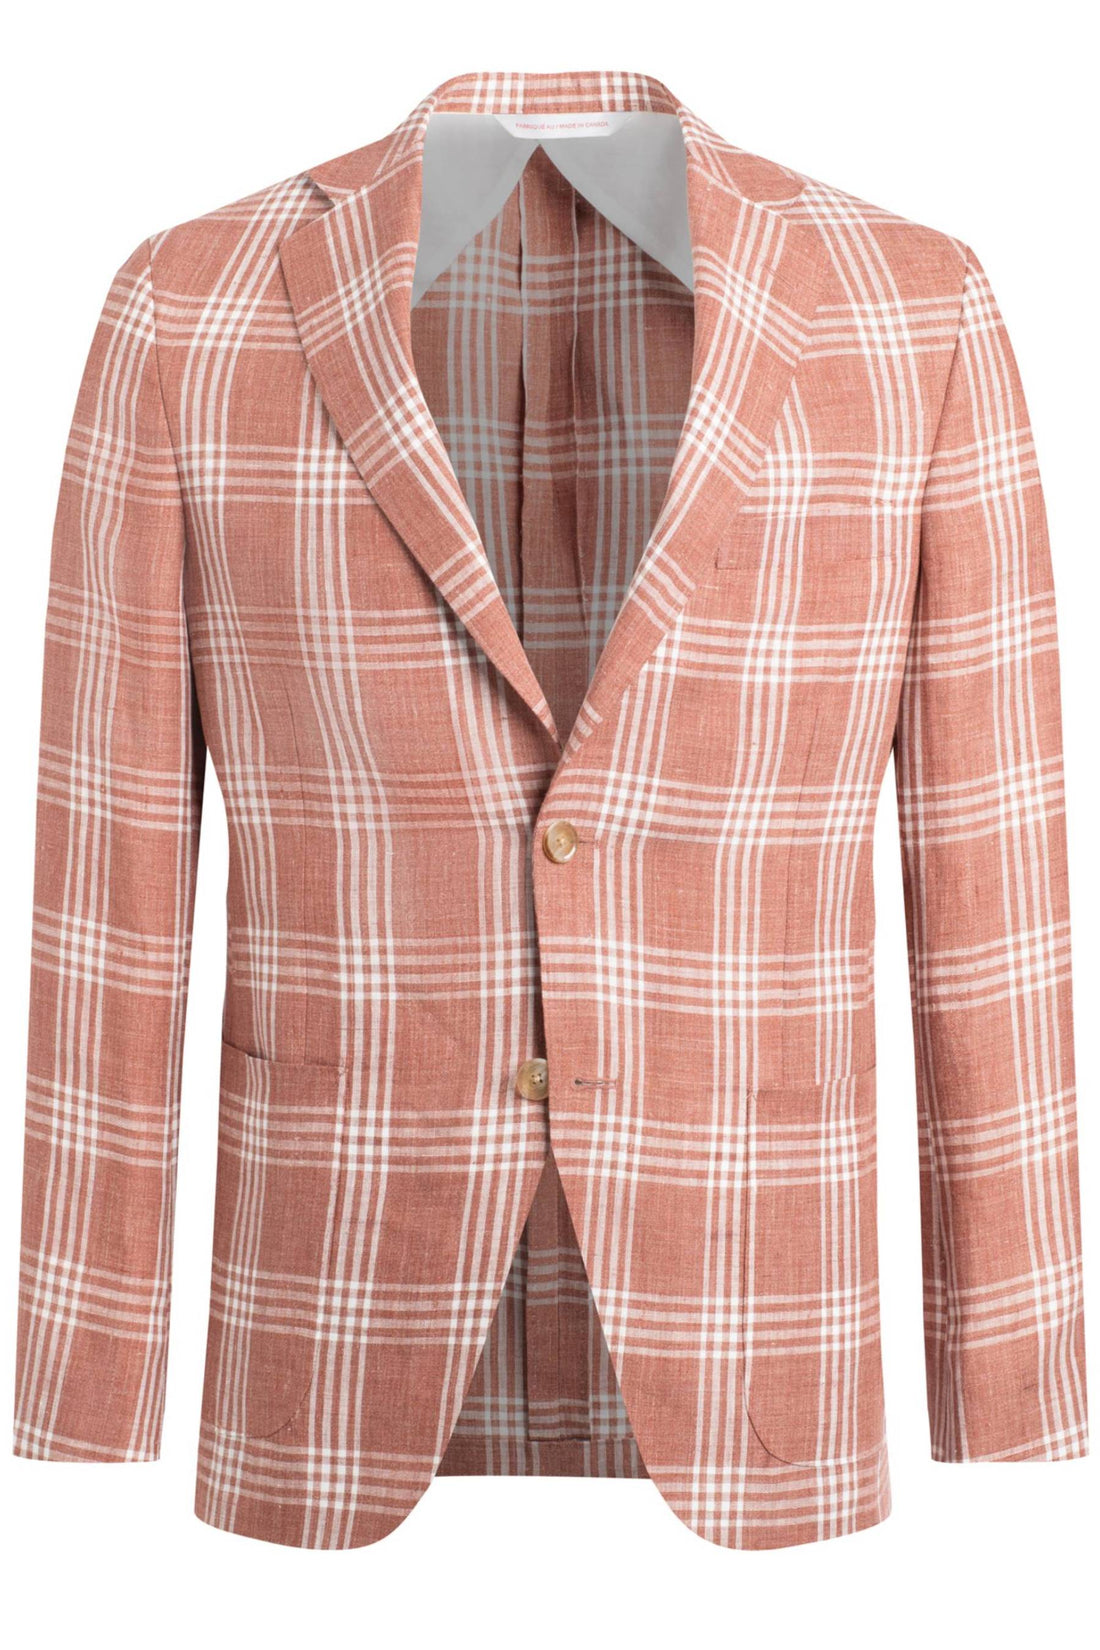 Samuelsohn Rust Linen Plaid Super Soft Jacket